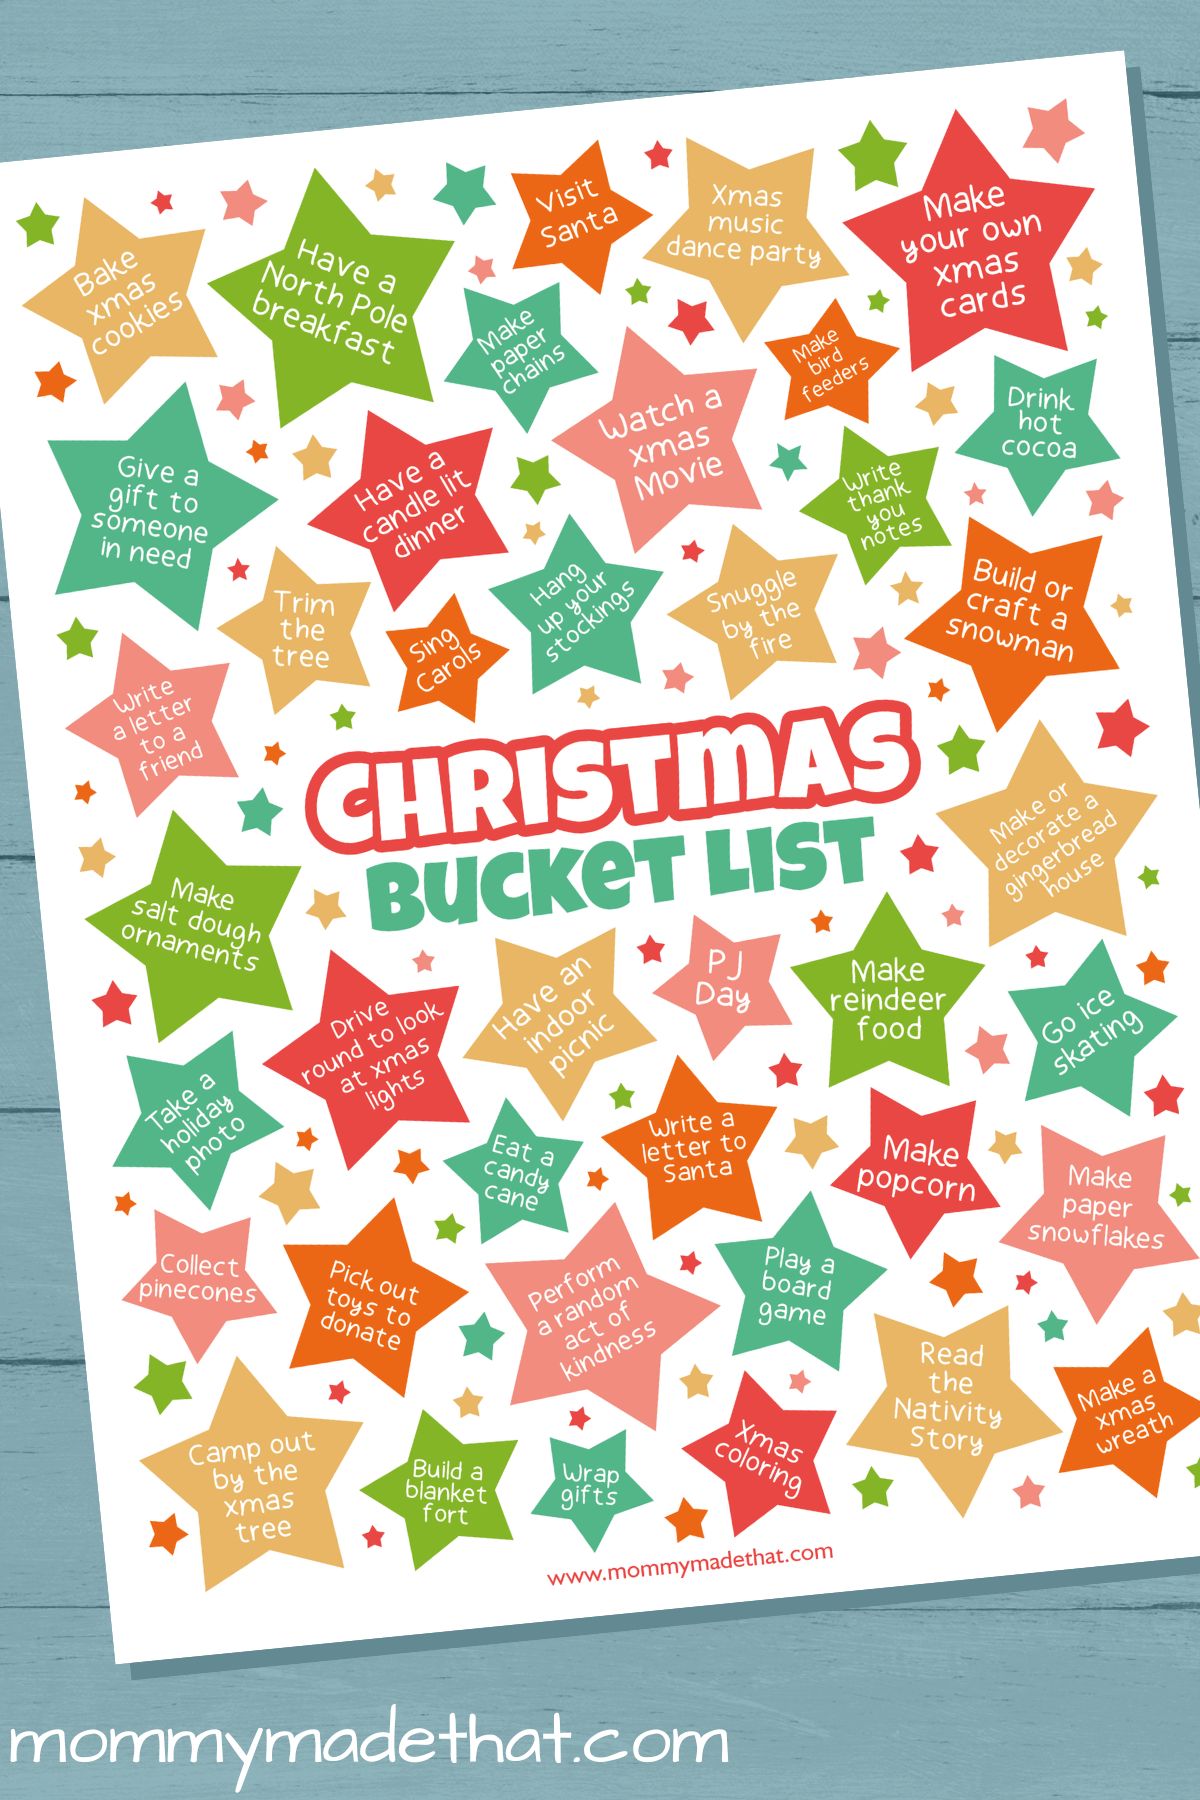 Christmas Bucket List (Massive List + Free Printable)